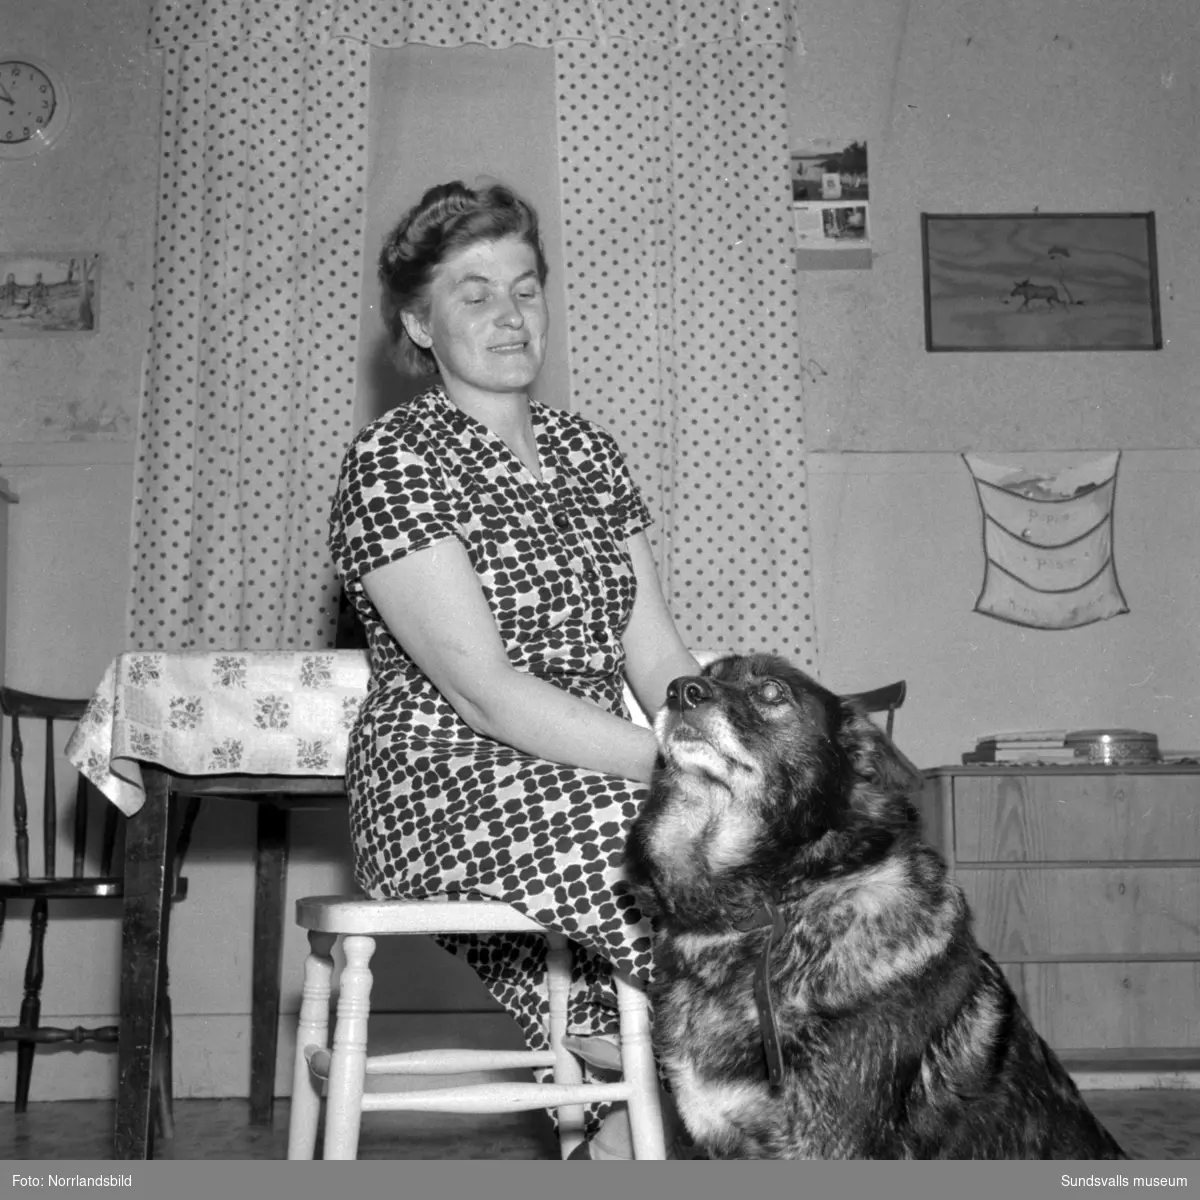 Fru Dagny Westman i Vikesund, Holm, blev hotad av en man med pistol hemma i sitt kök 1956. Mannen stal mat och försvann sedan till skogs. Reportagebilder för Expressen.